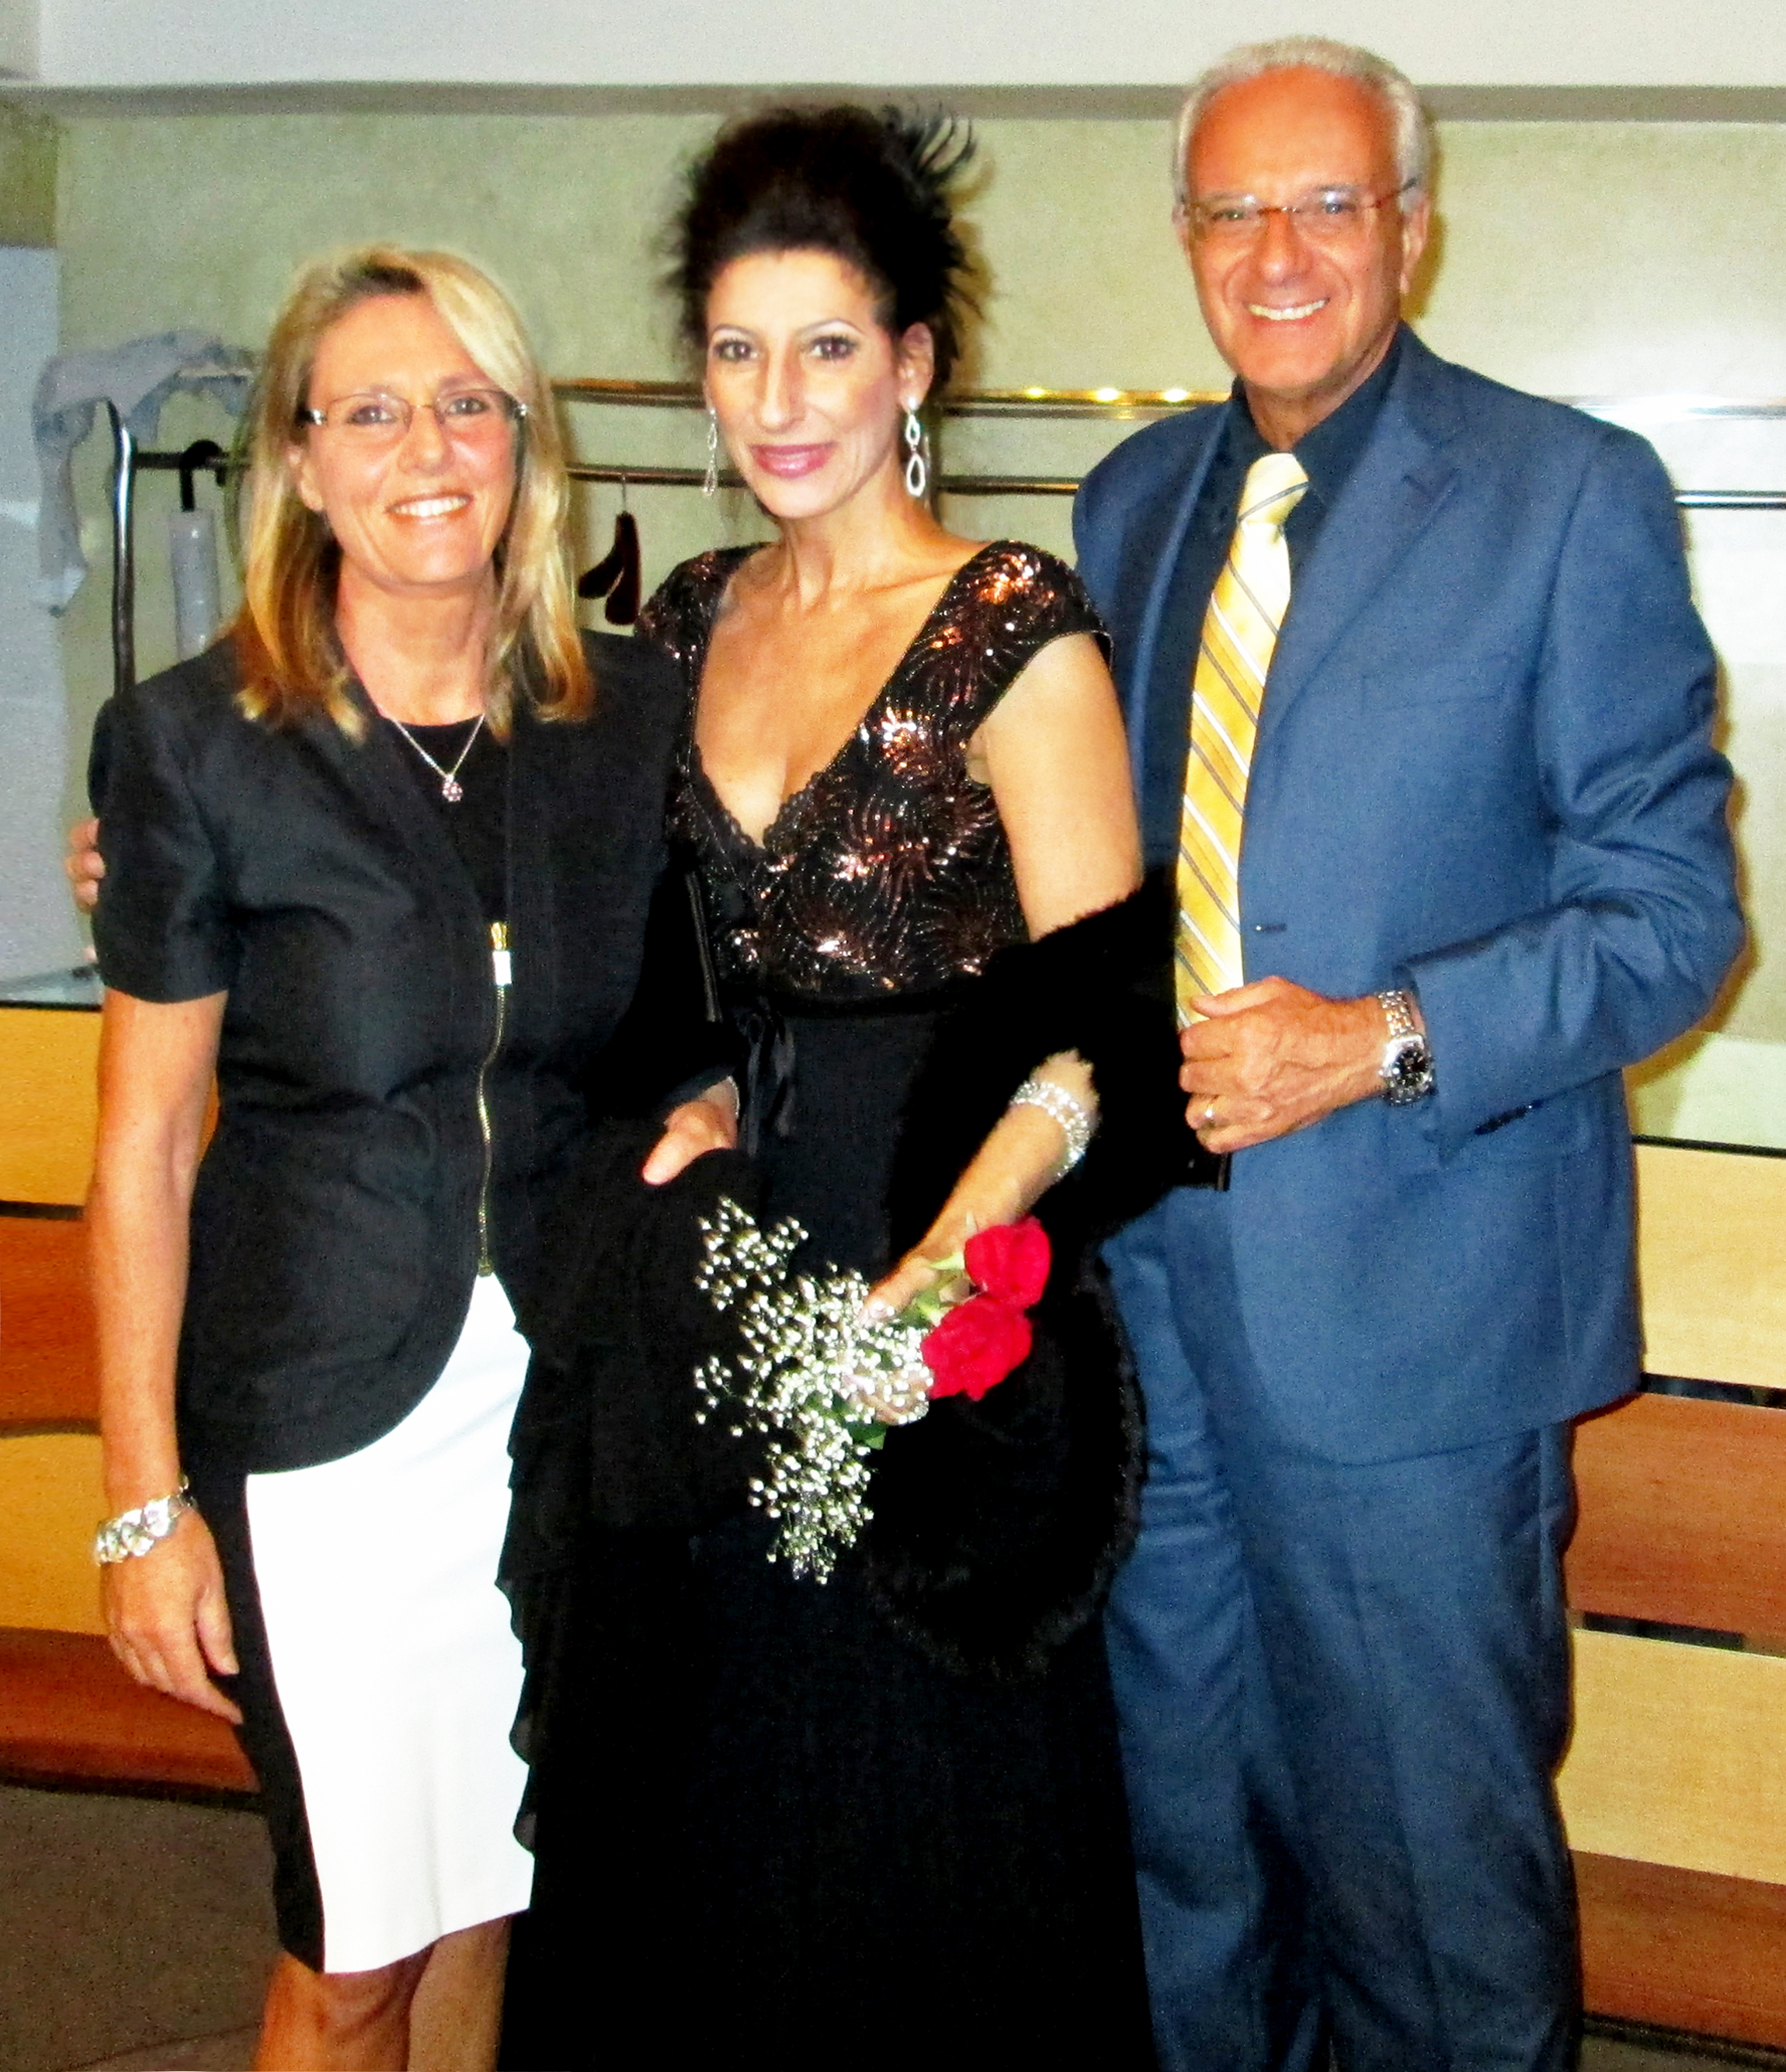 Lucia Aliberti with Countess Eleonora Pellegrini De Vera and the Sport Journalist Filippo Grassia⚘Special Concert⚘Auditorium⚘Milan⚘Escada Fashion⚘:http://www.luciaaliberti.it #luciaaliberti #filippograssia #eleonorapellegrinidevera #auditorium #concert #milan #escadafashion